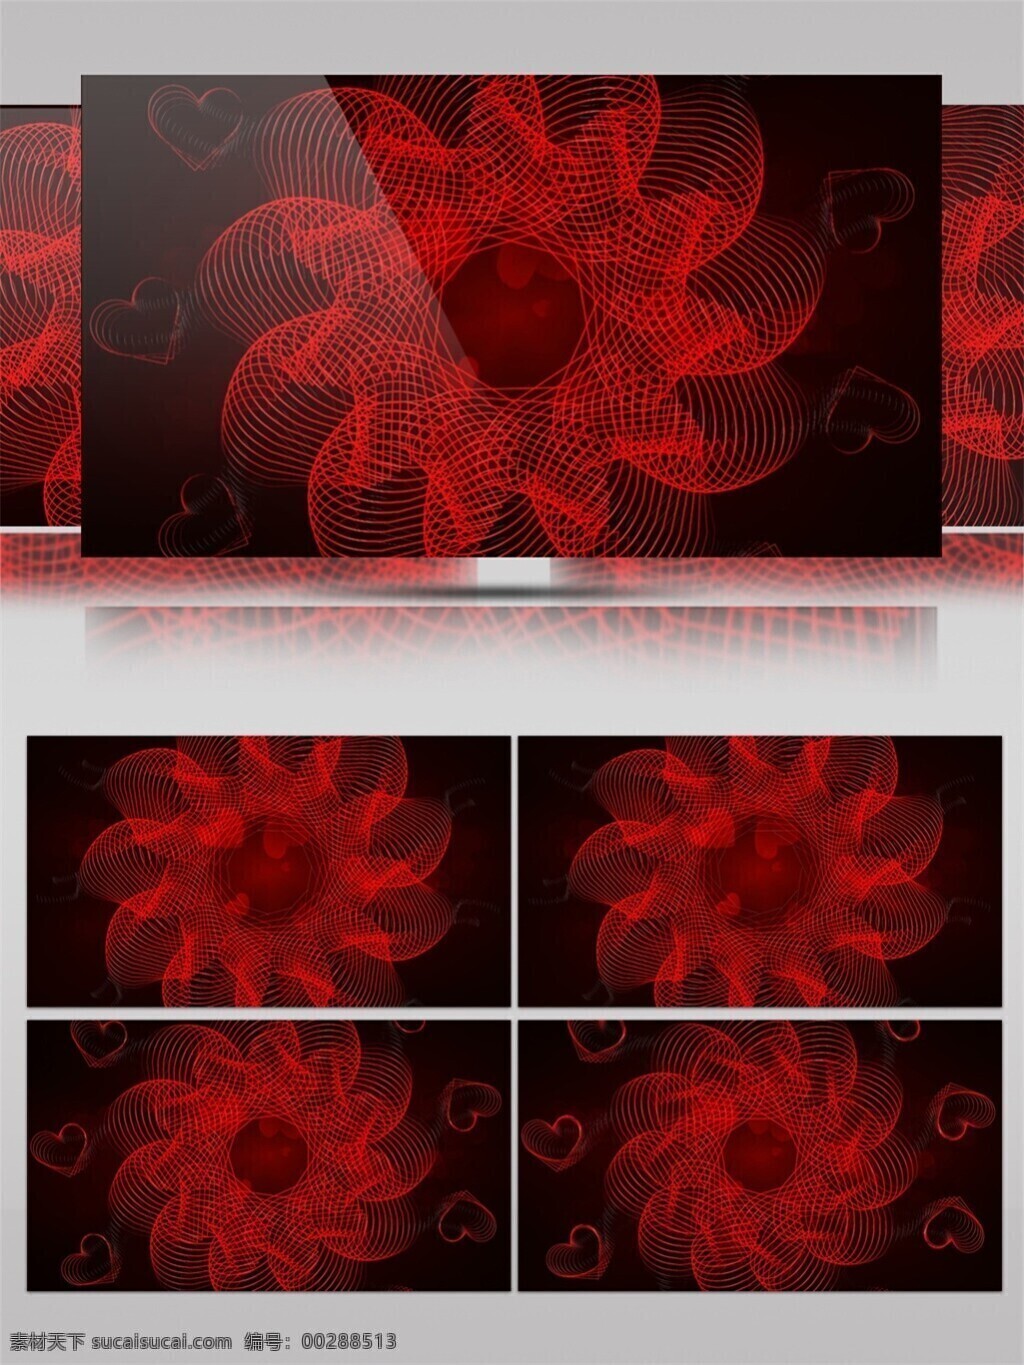 红色 光环 花蕾 视频 高清素材 光景素材 花朵 激光 唯美素材